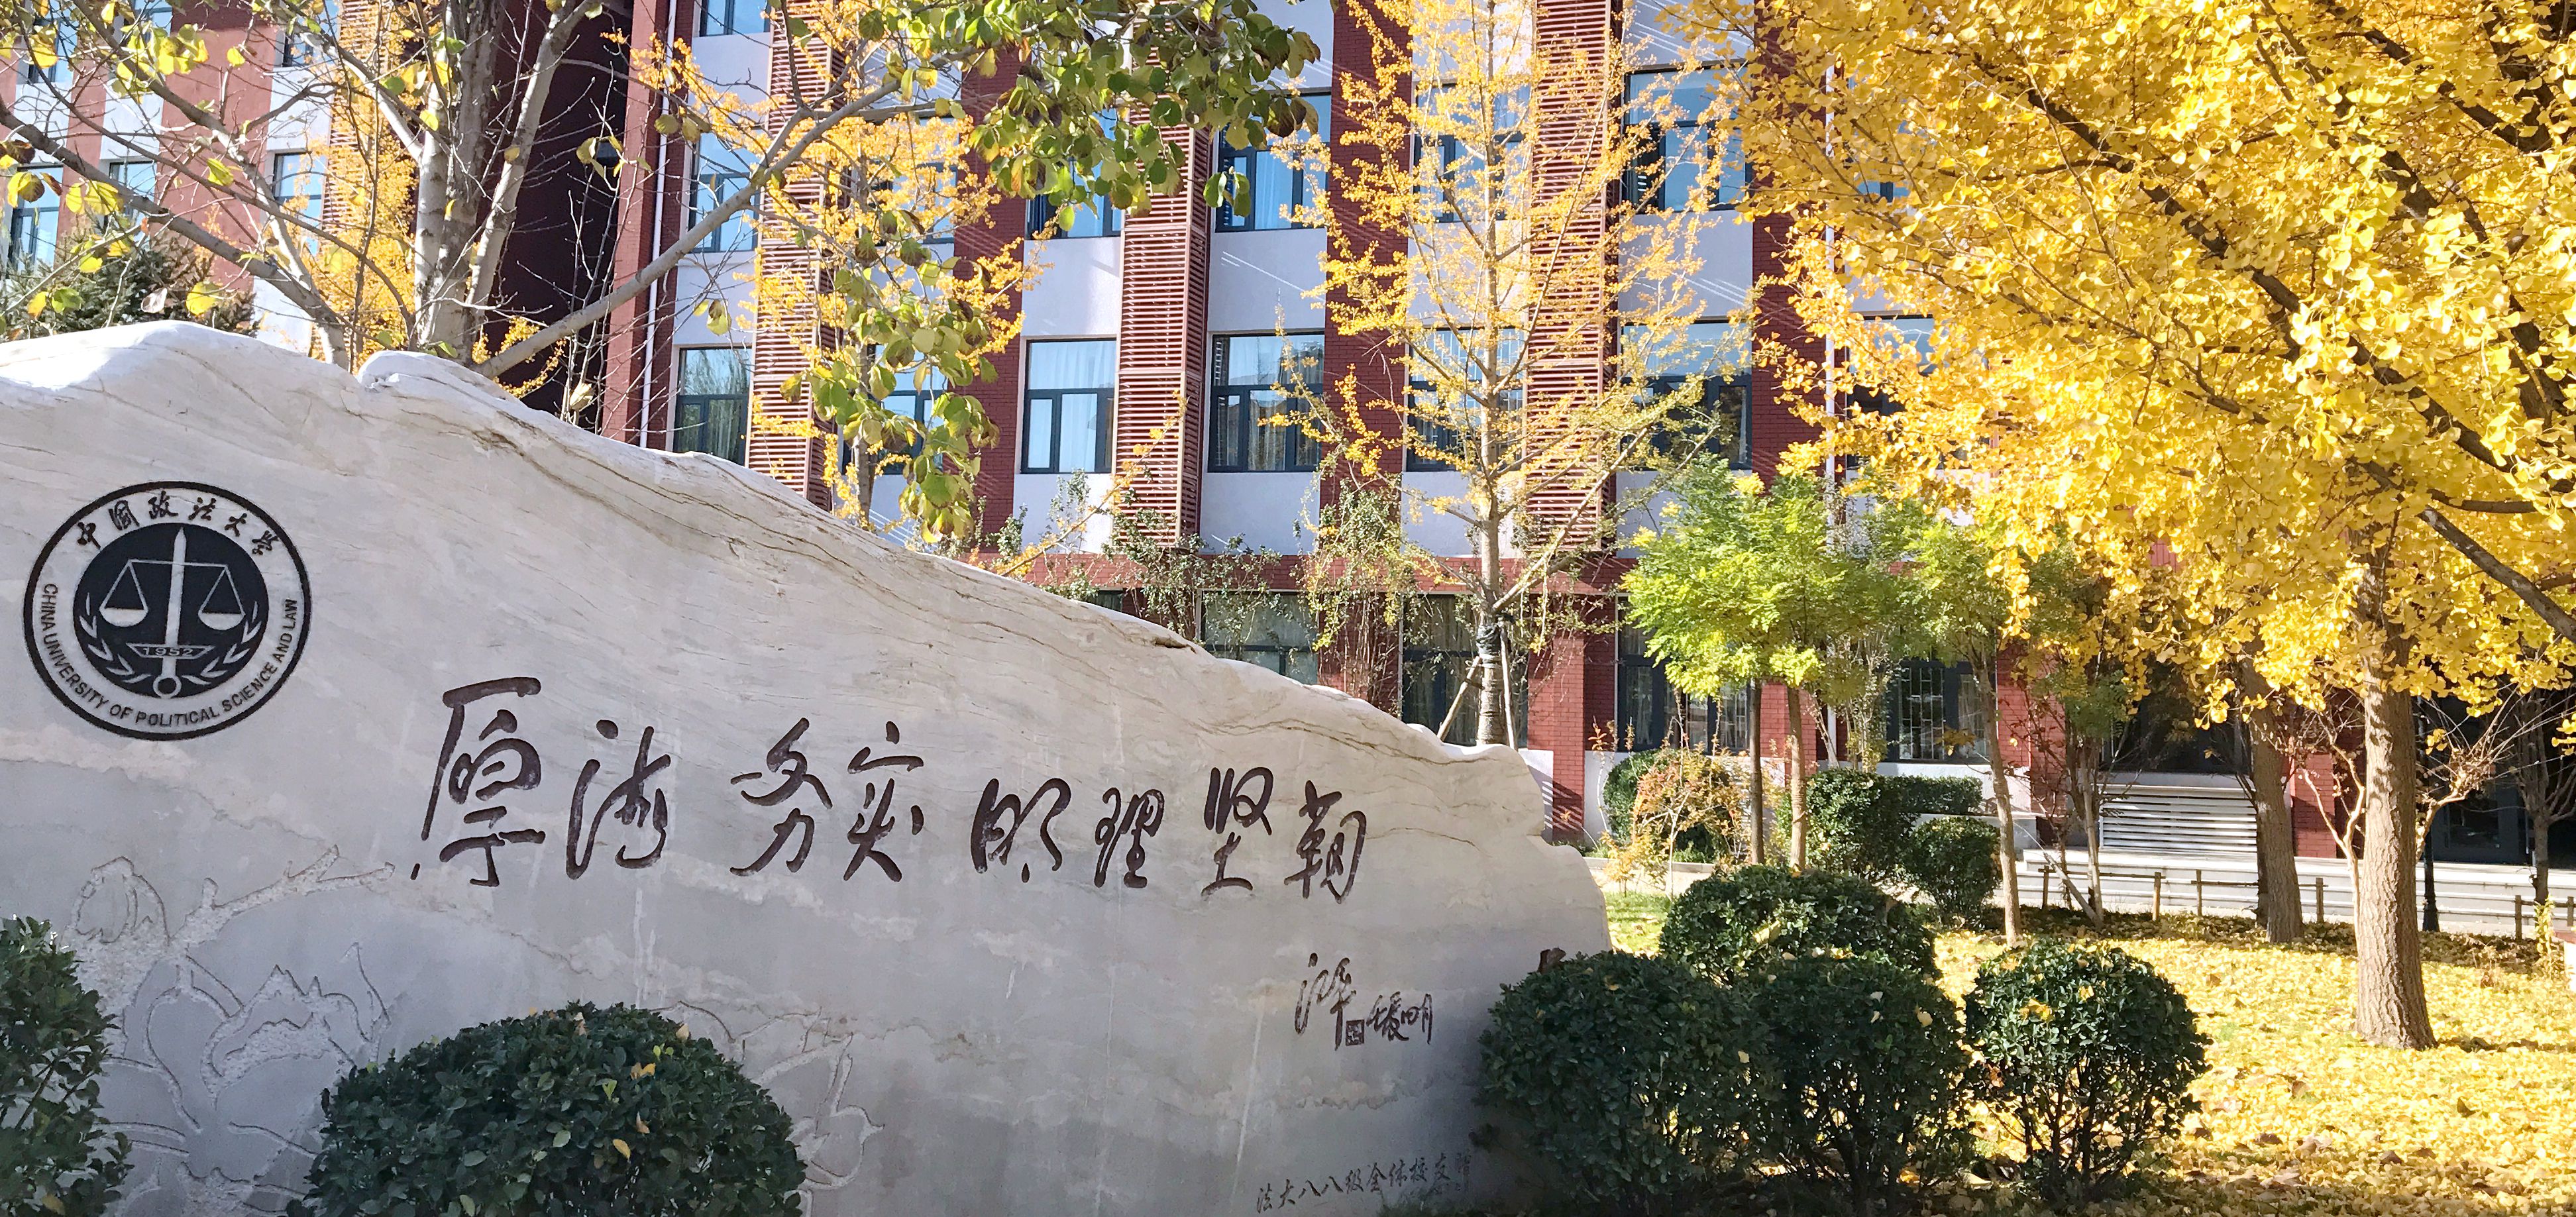 法学院 - 中国政法大学